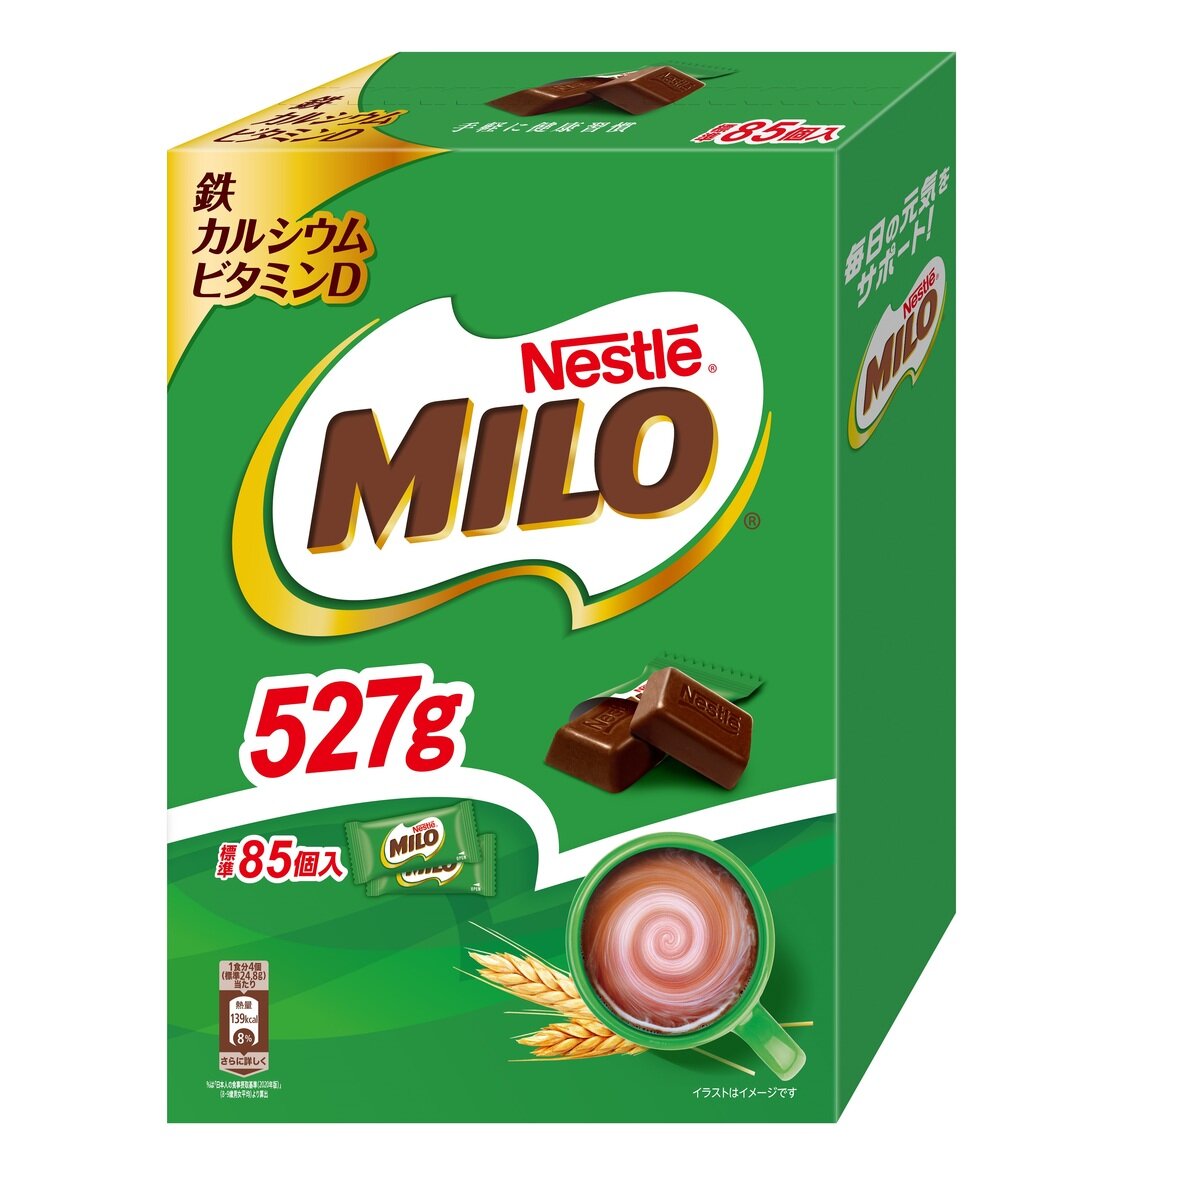 ミロチョコレート 85個入り 527g | Costco Japan